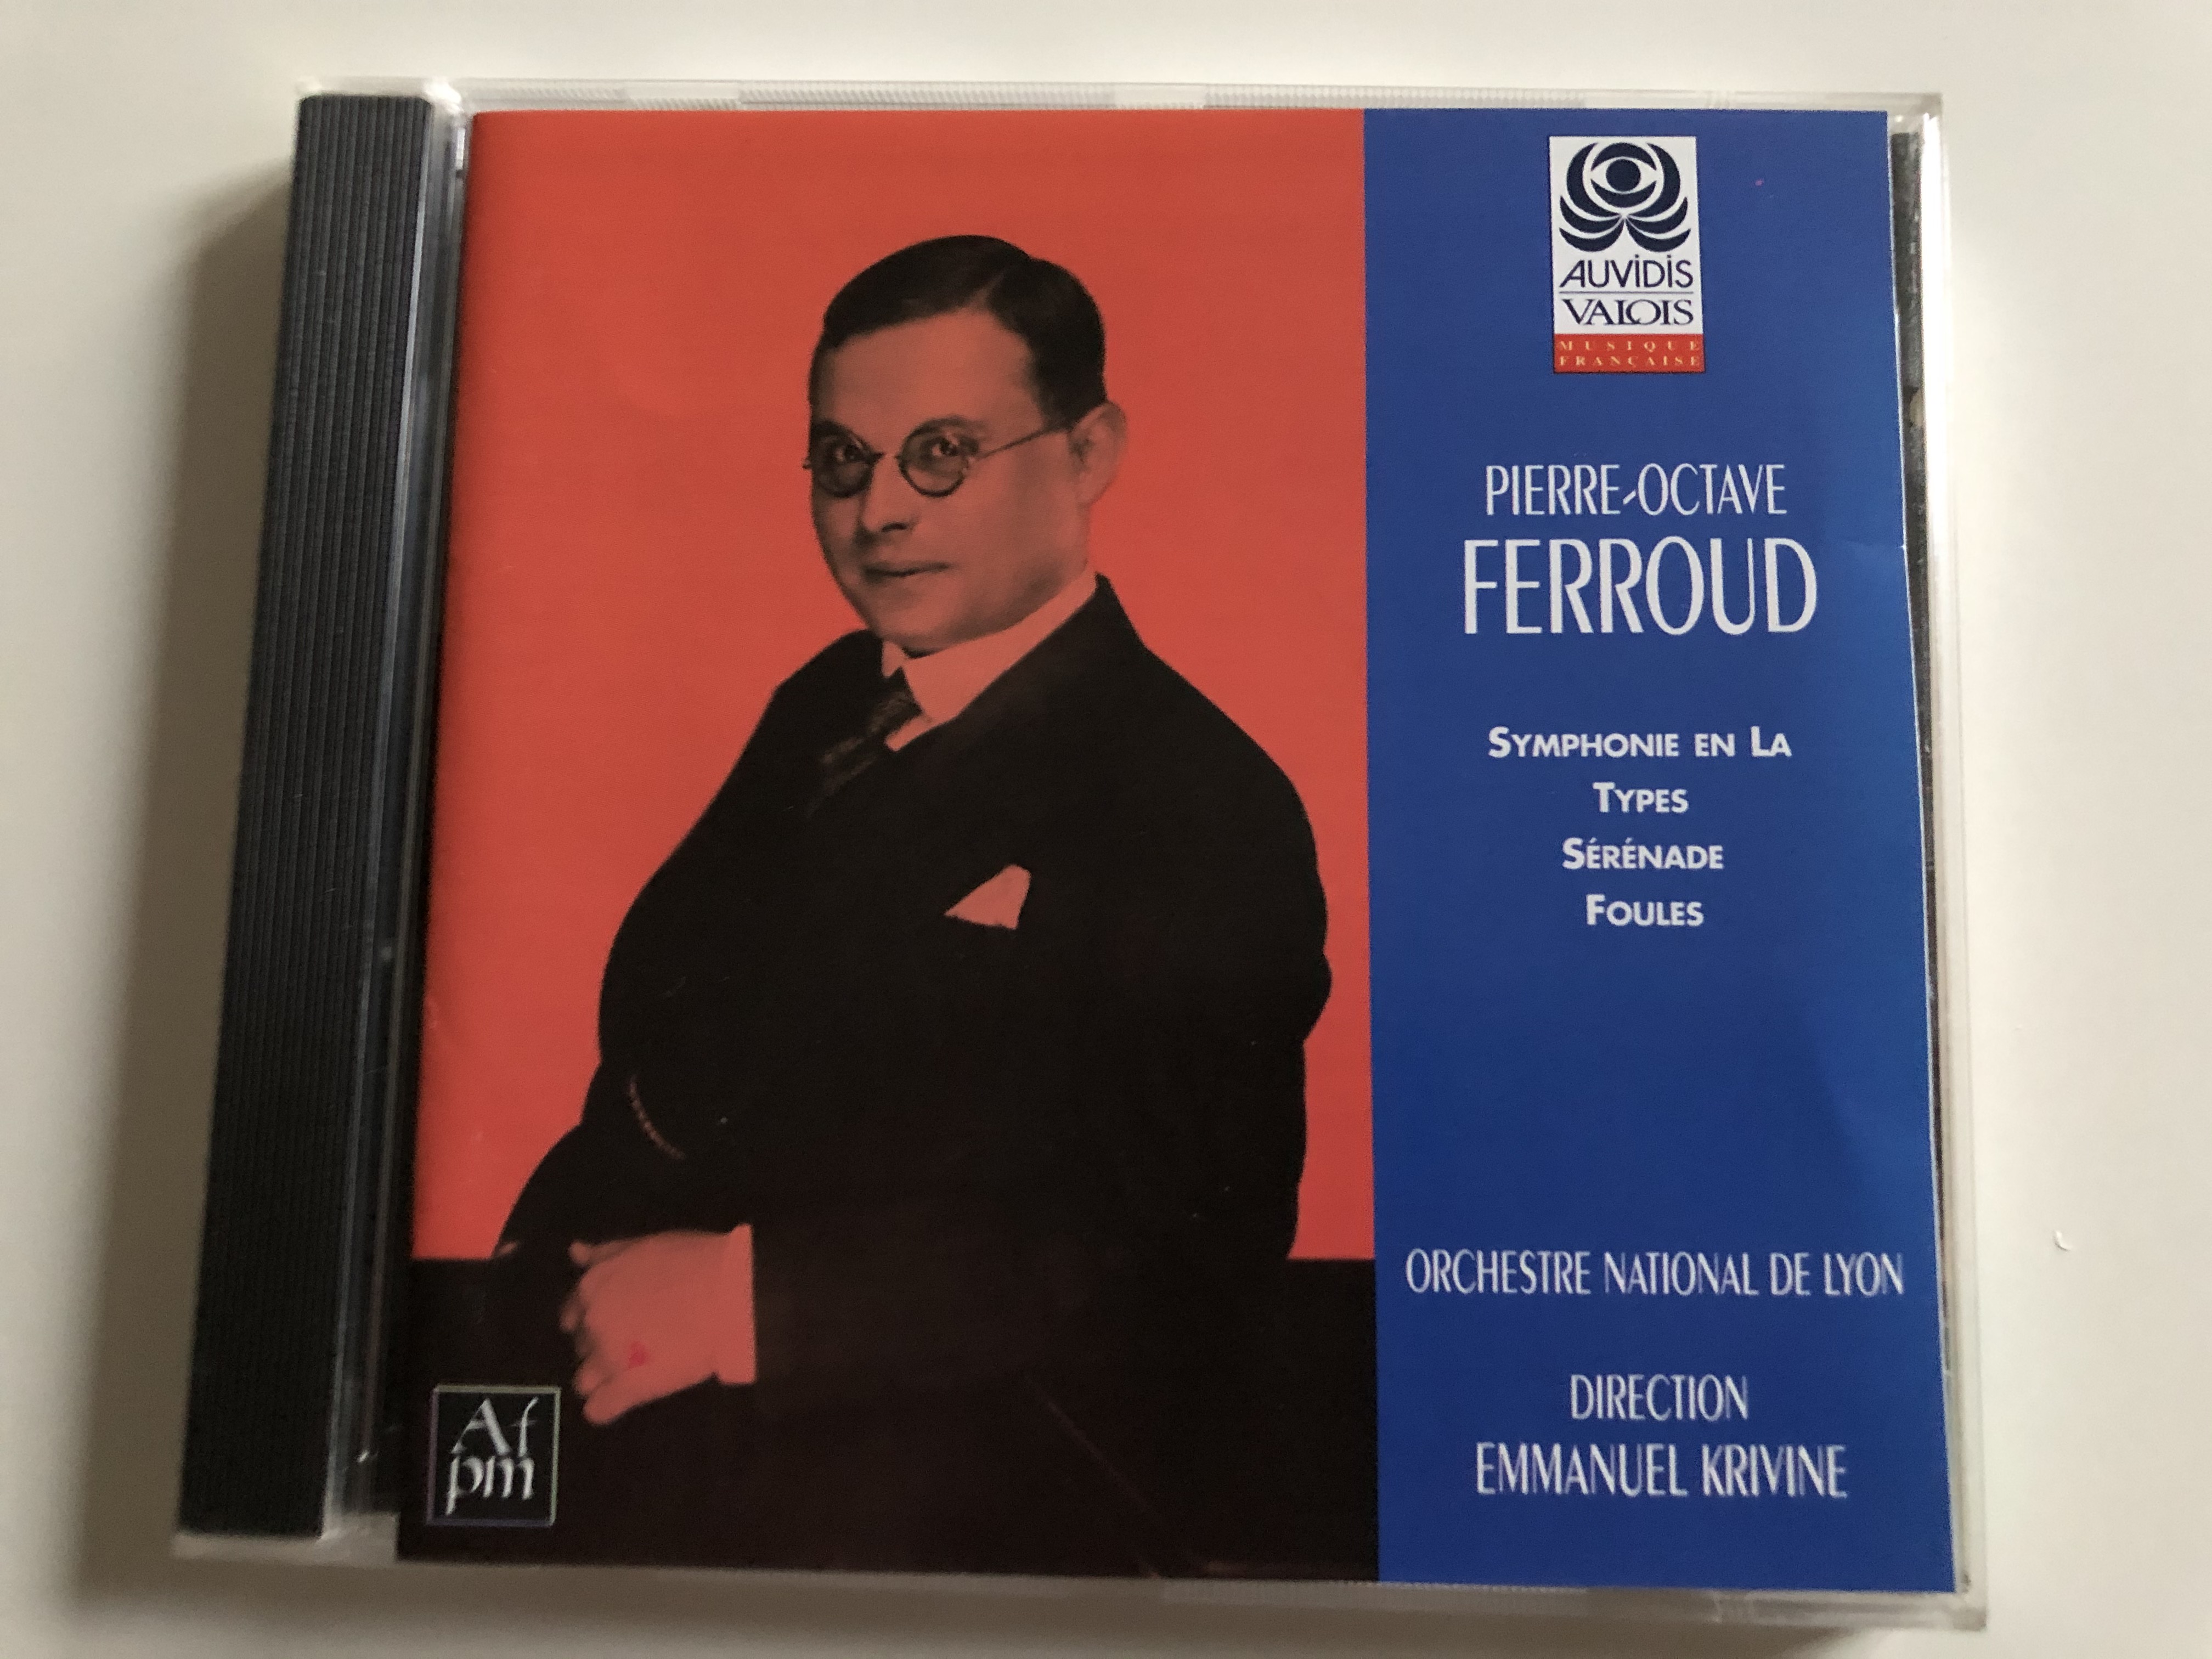 pierre-octave-ferroud-symphonie-en-la-types-serenade-foules-orchestre-national-de-lyon-emmanuel-krivine-auvidis-valois-audio-cd-1998-v-4810-1-.jpg